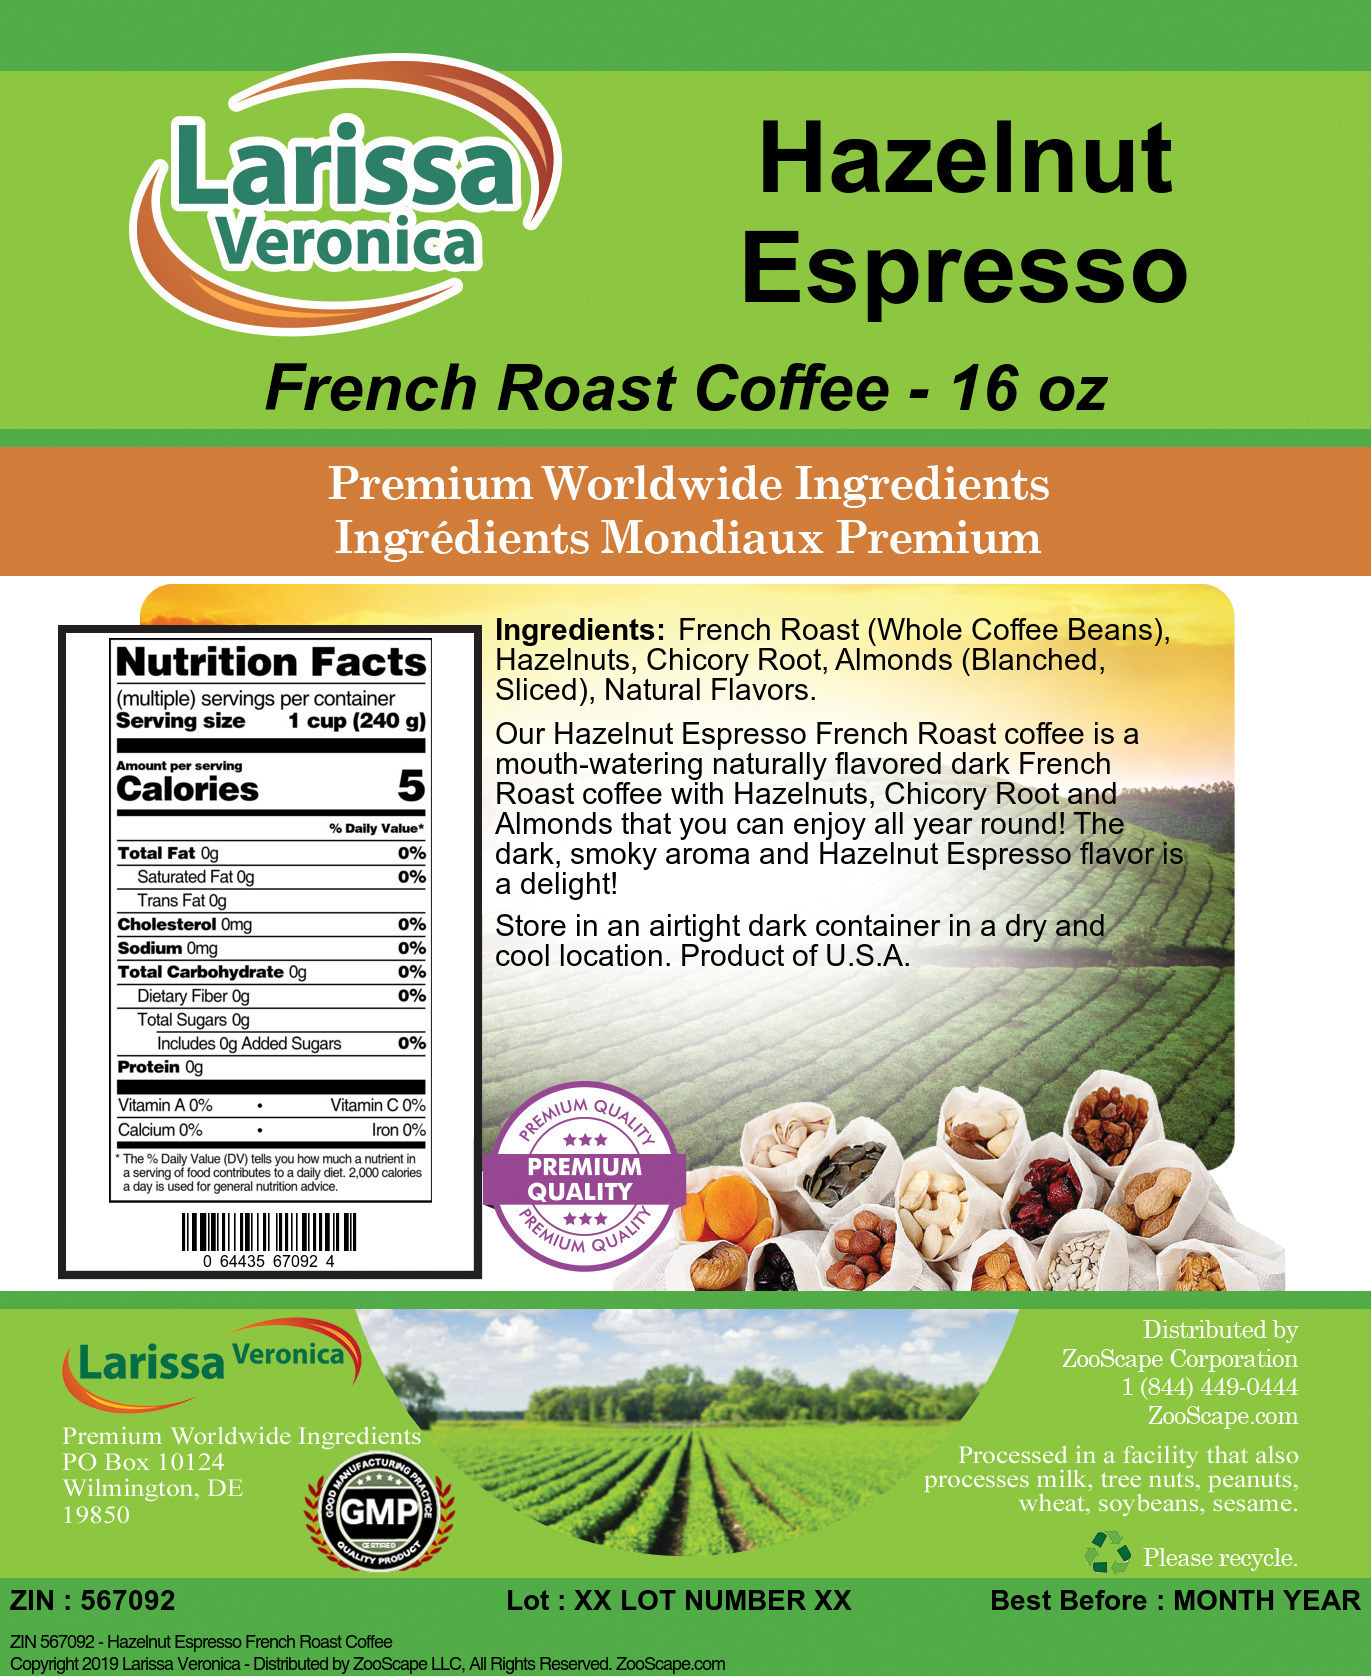 Hazelnut Espresso French Roast Coffee - Label